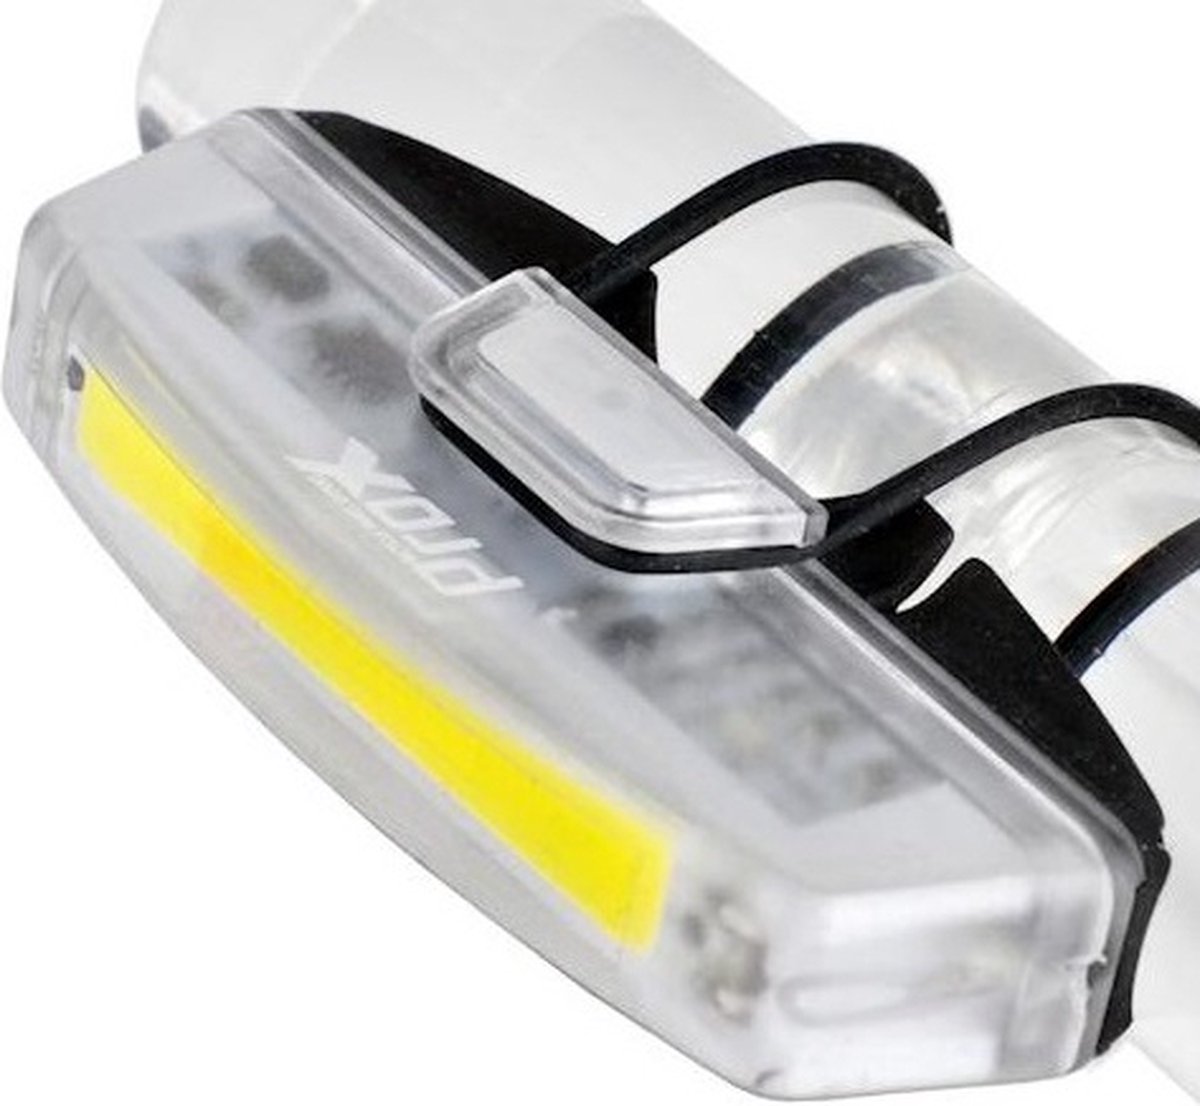 ProX Voorlicht - 100 Lumen - LED Fietslamp - USB Oplaadbaar